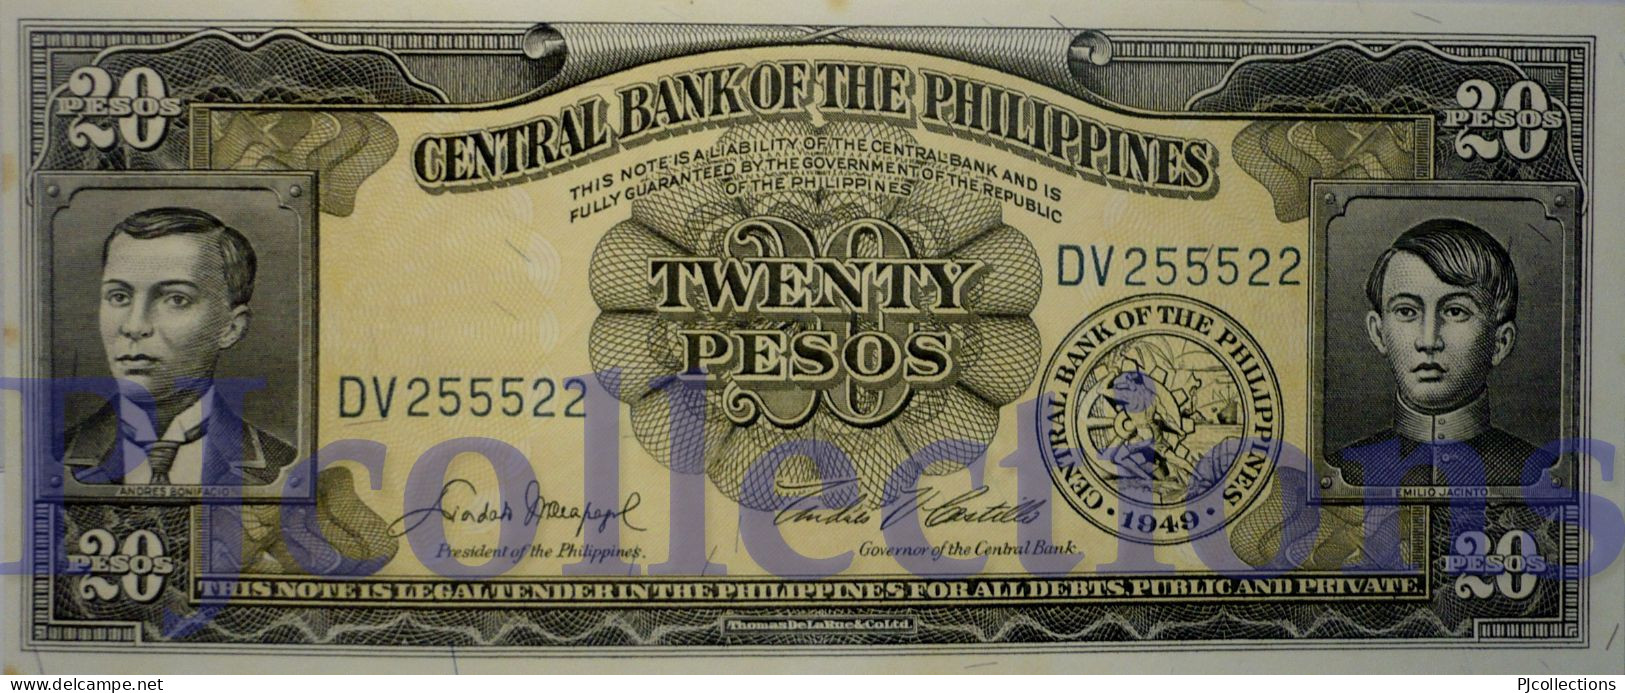 PHILIPPINES 20 PESOS 1949 PICK 137d UNC GOOD SERIAL NUMBER "DV255522" - Philippines